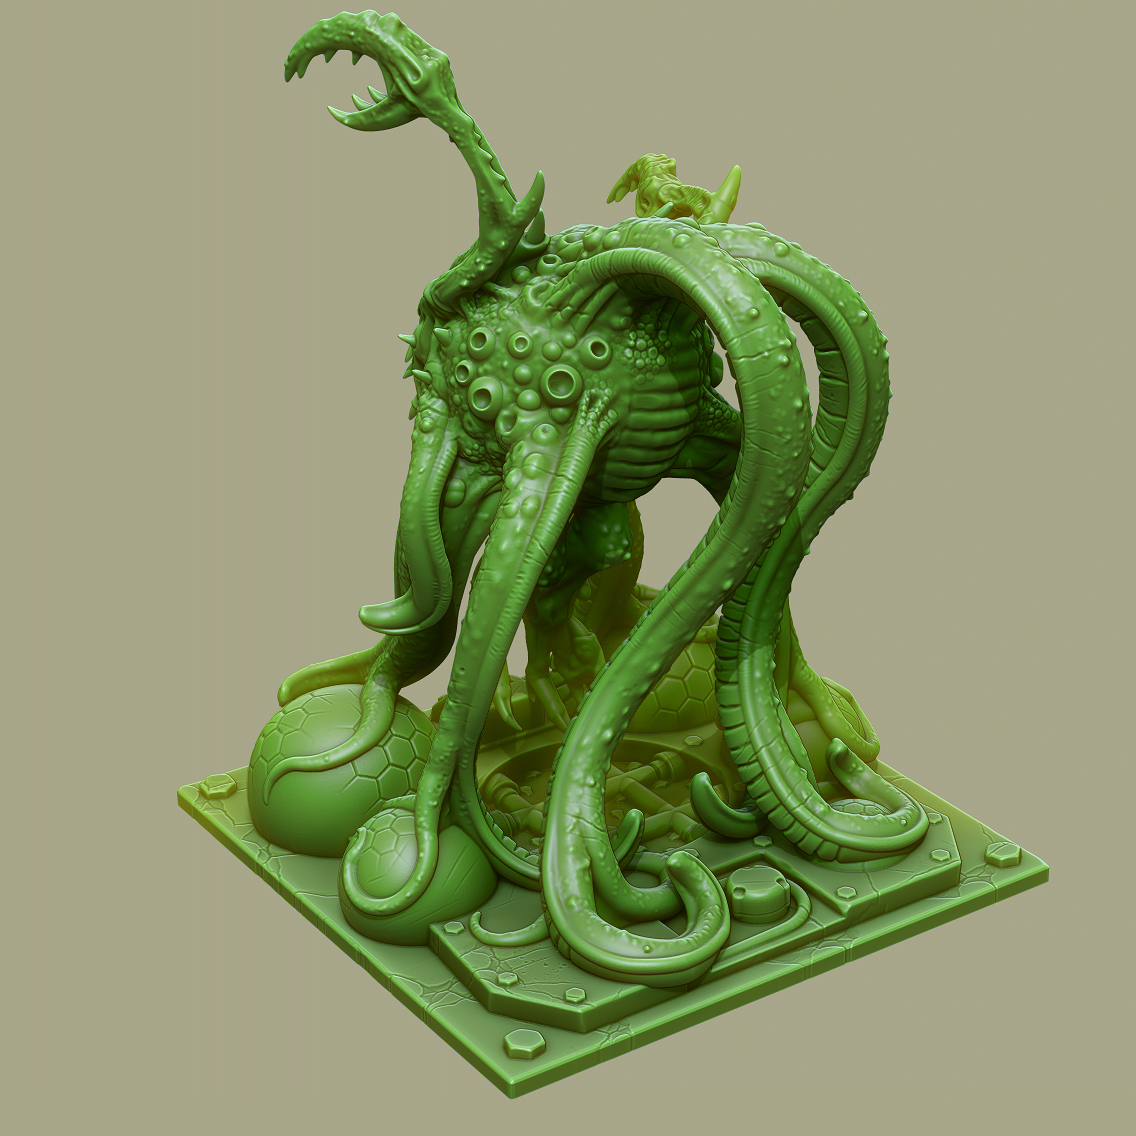 3D Printed TENTACLE MONSTER by PrintYourMonsters